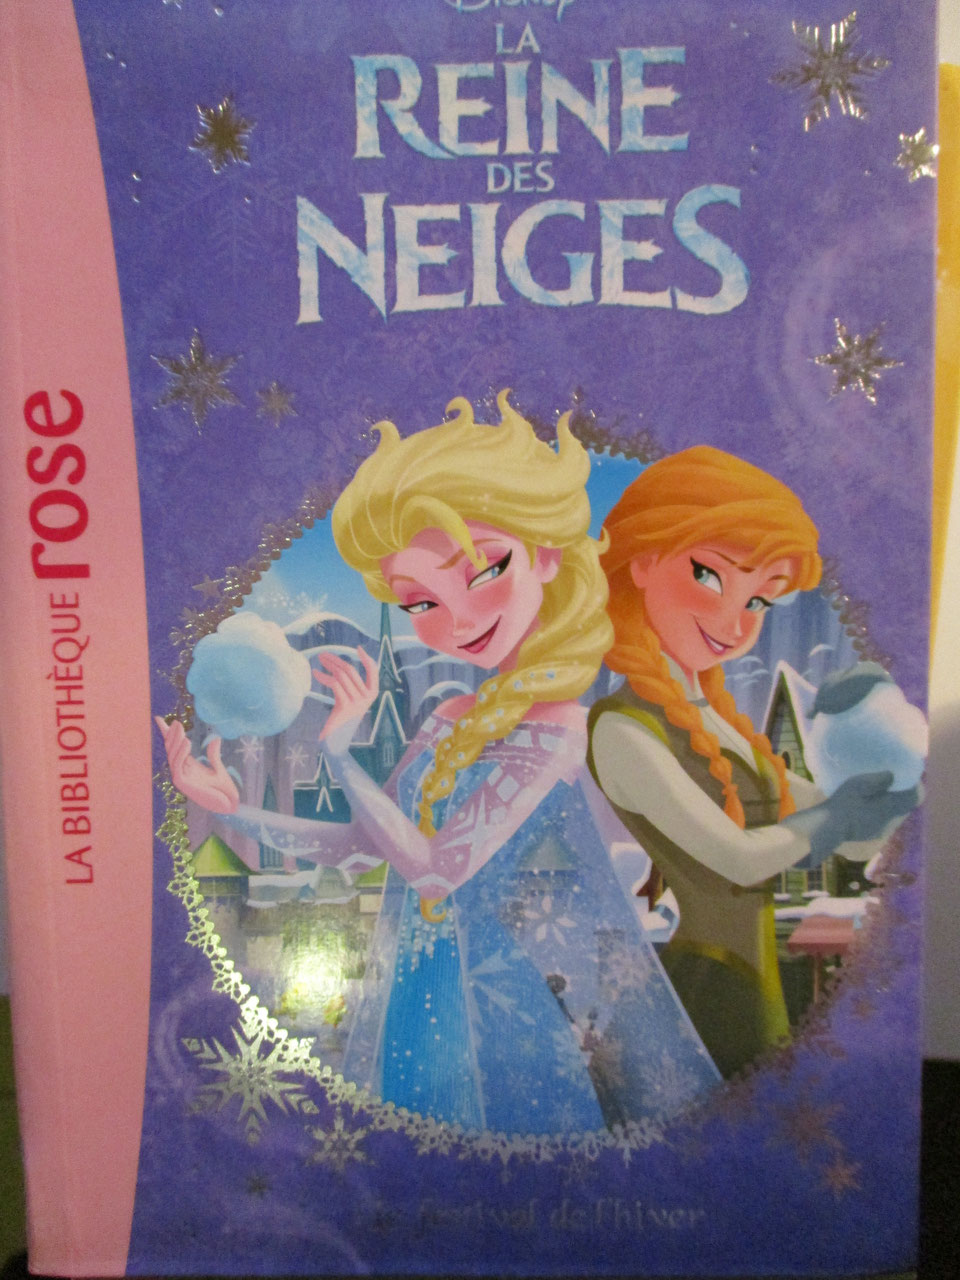 [Litterature jeunesse] Les Livres de la reine des neiges 1 et 2 de la bibliothèque rose Image